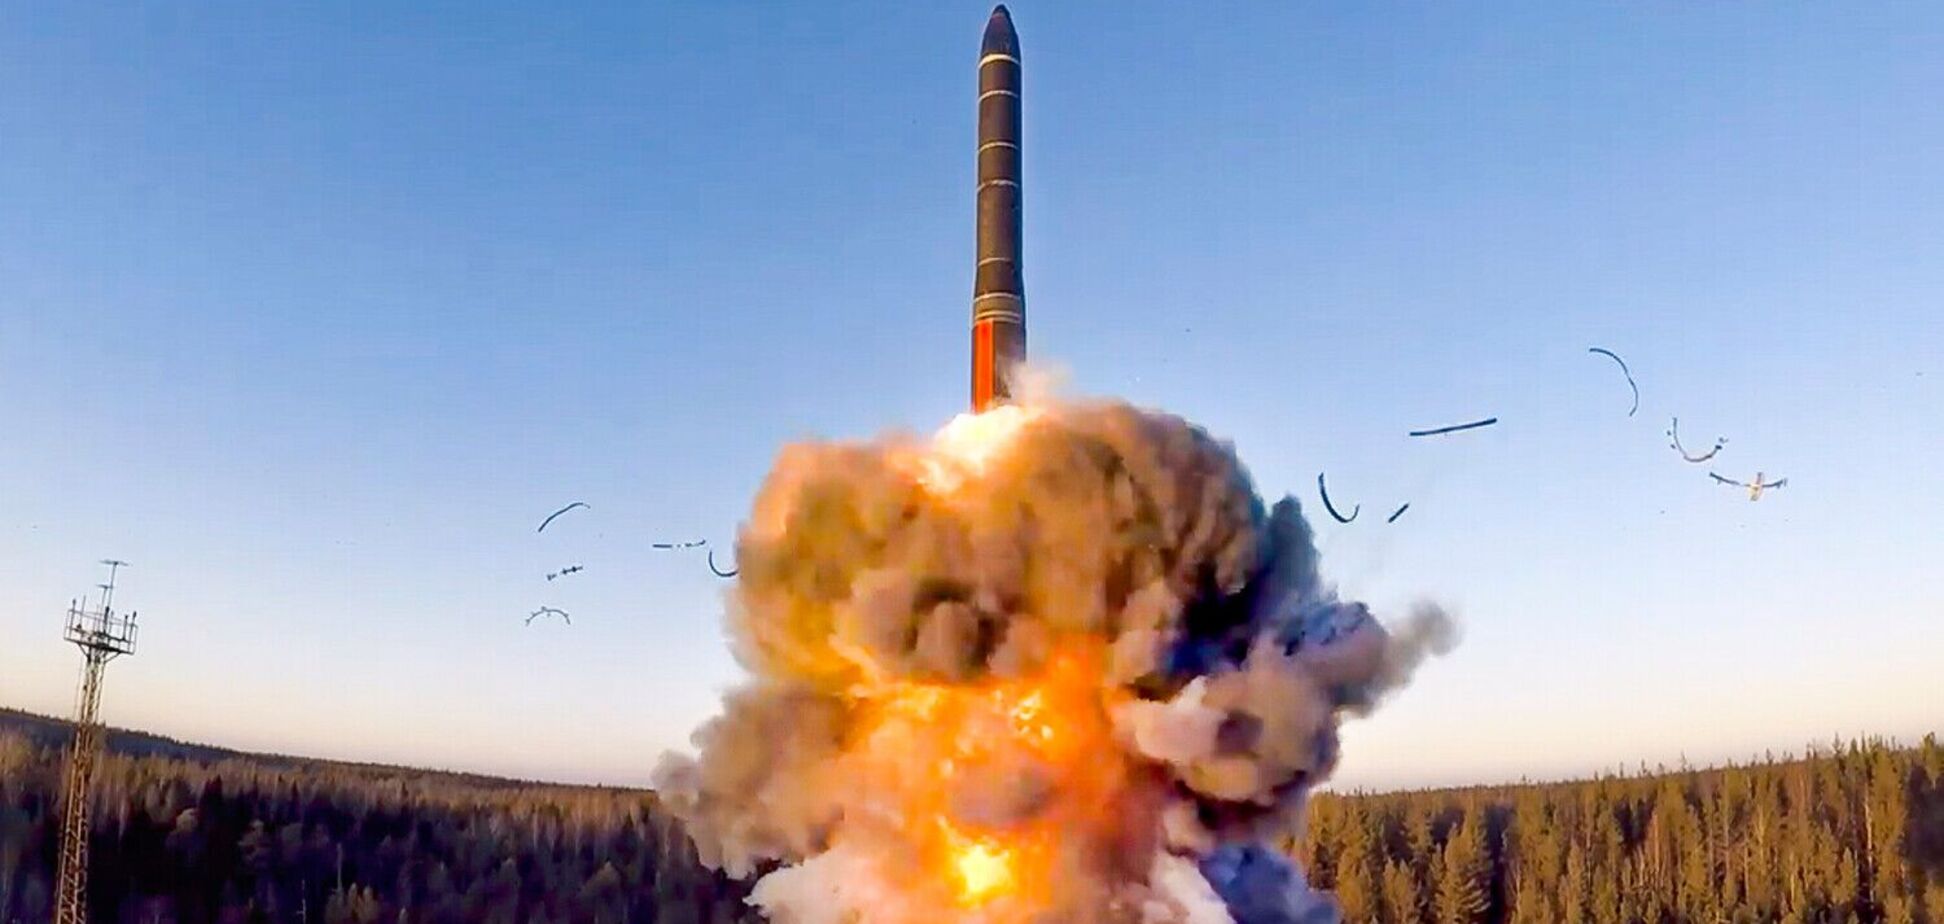 Путинская ракета петляла над Украиной 2100 км, но действительно ли у врага большой потенциал? Интервью с полковником Черником